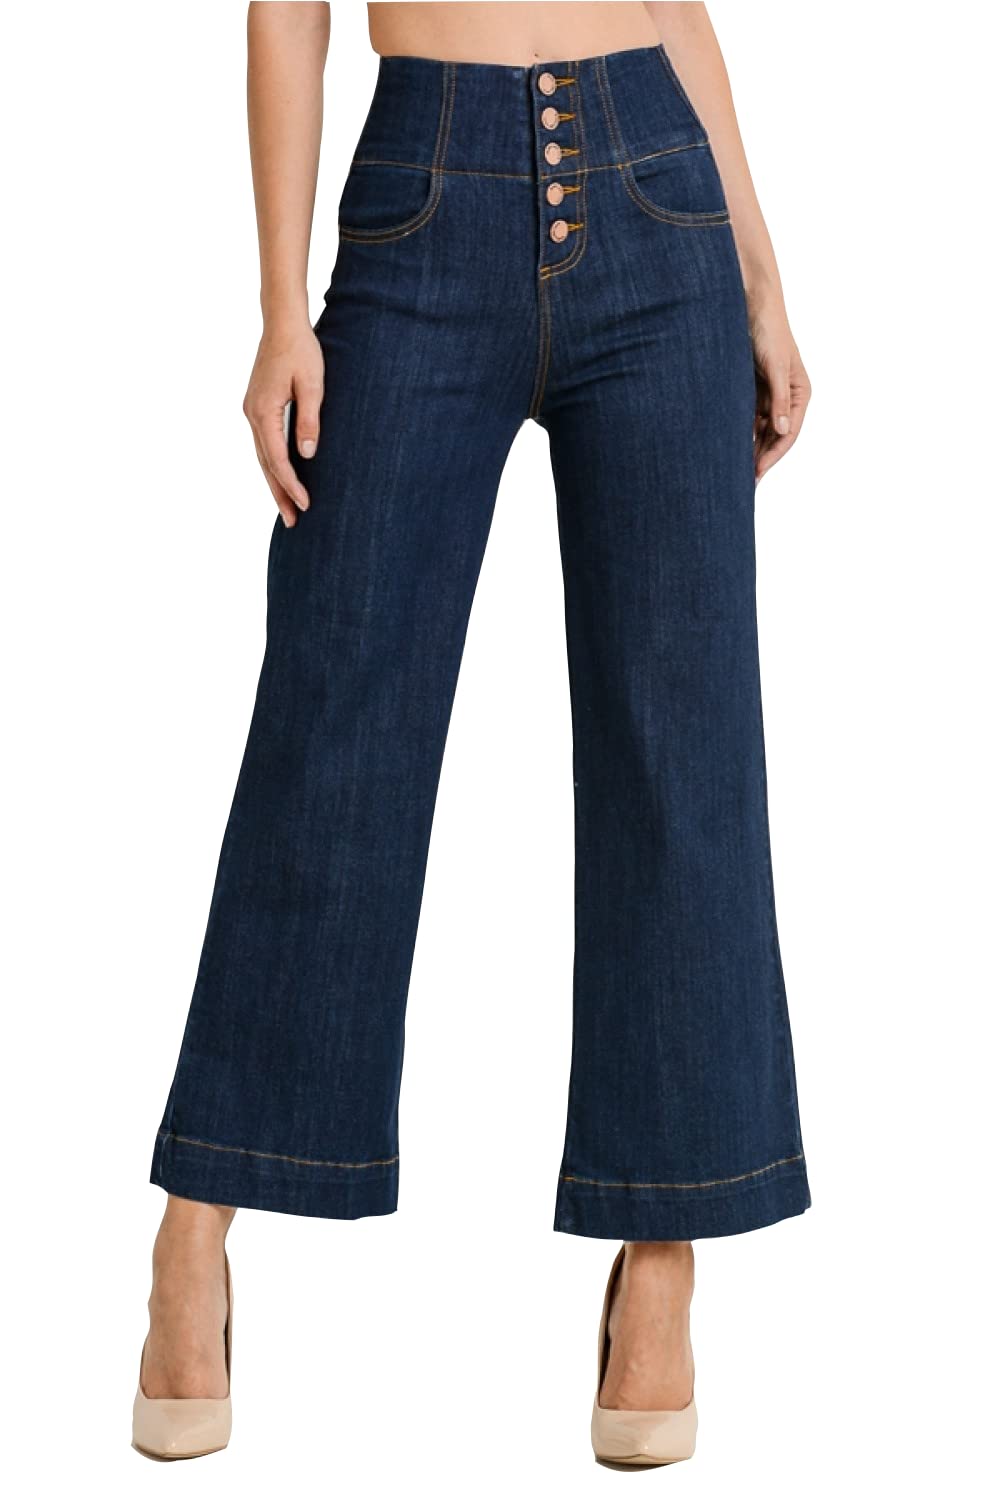 Women's High-Rise Waist 5 Button Front Wide Leg Denim Jean Vintage Culottes Pants